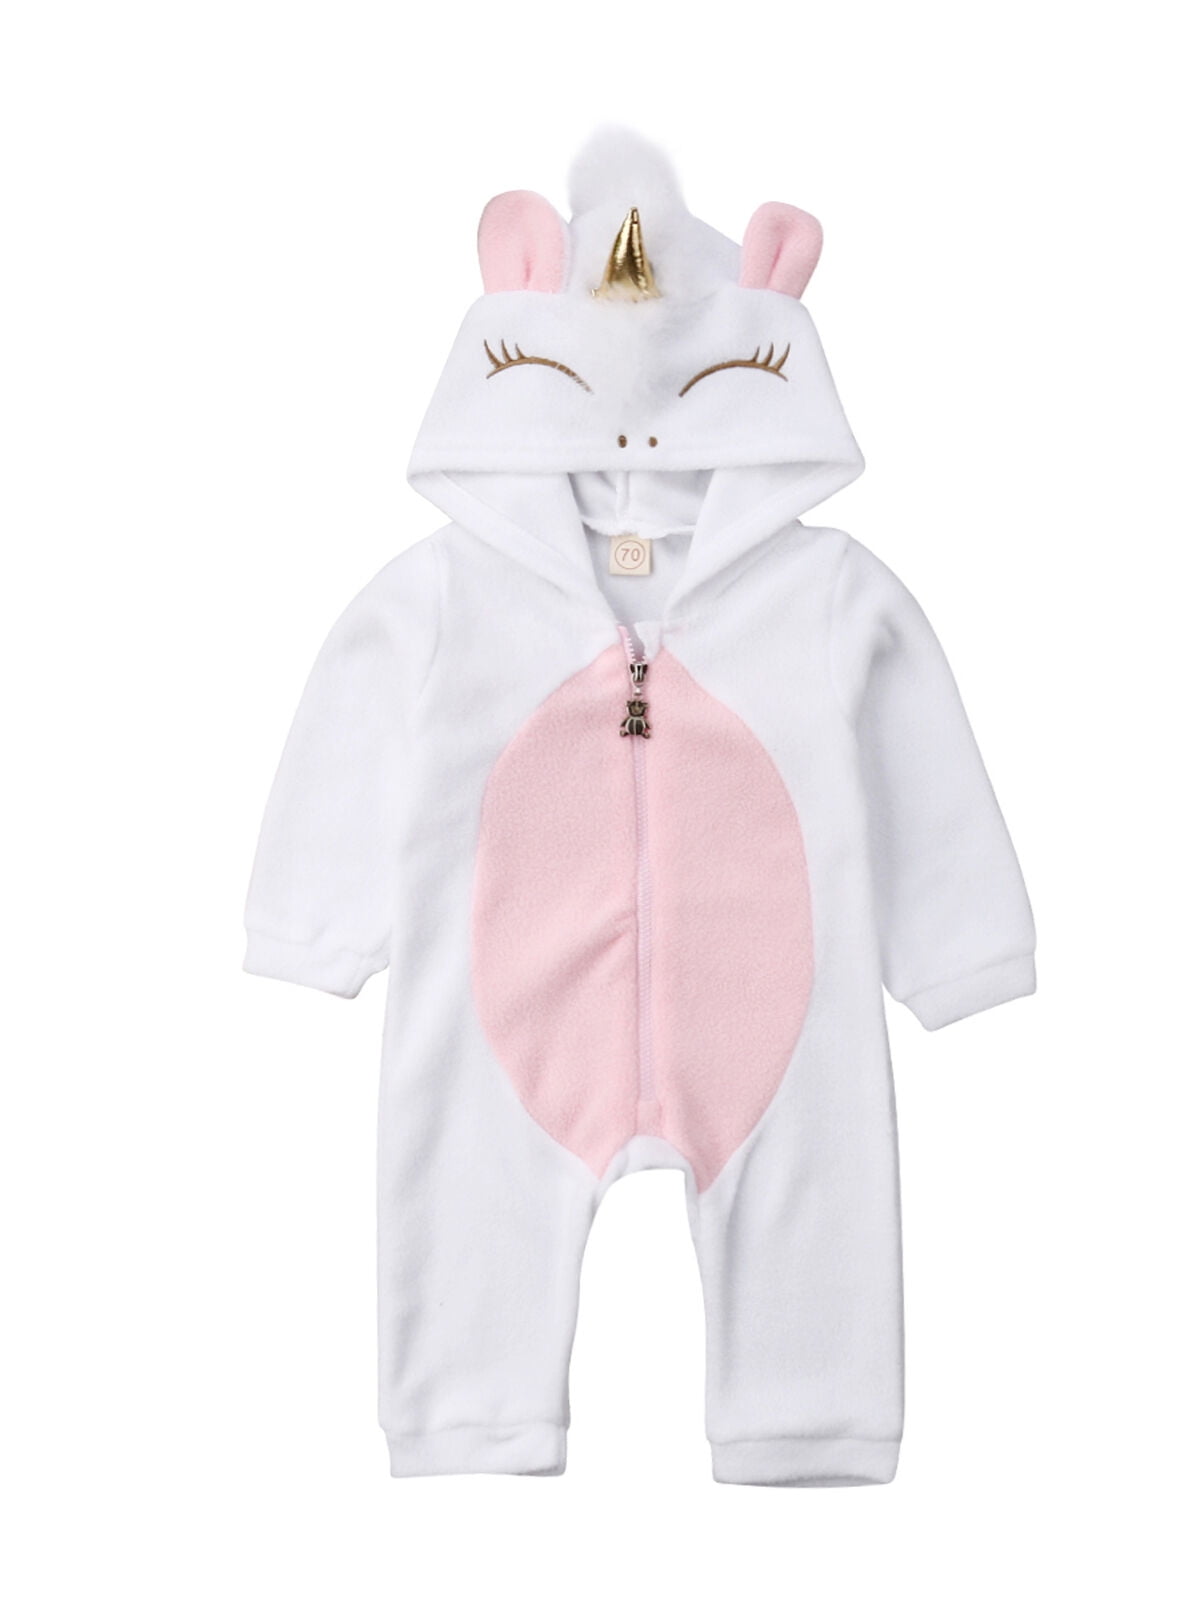 Newborn Infant Baby Girl Unicorn Romper Bodysuit Jumpsuit Outfit Sunsuit Clothes 